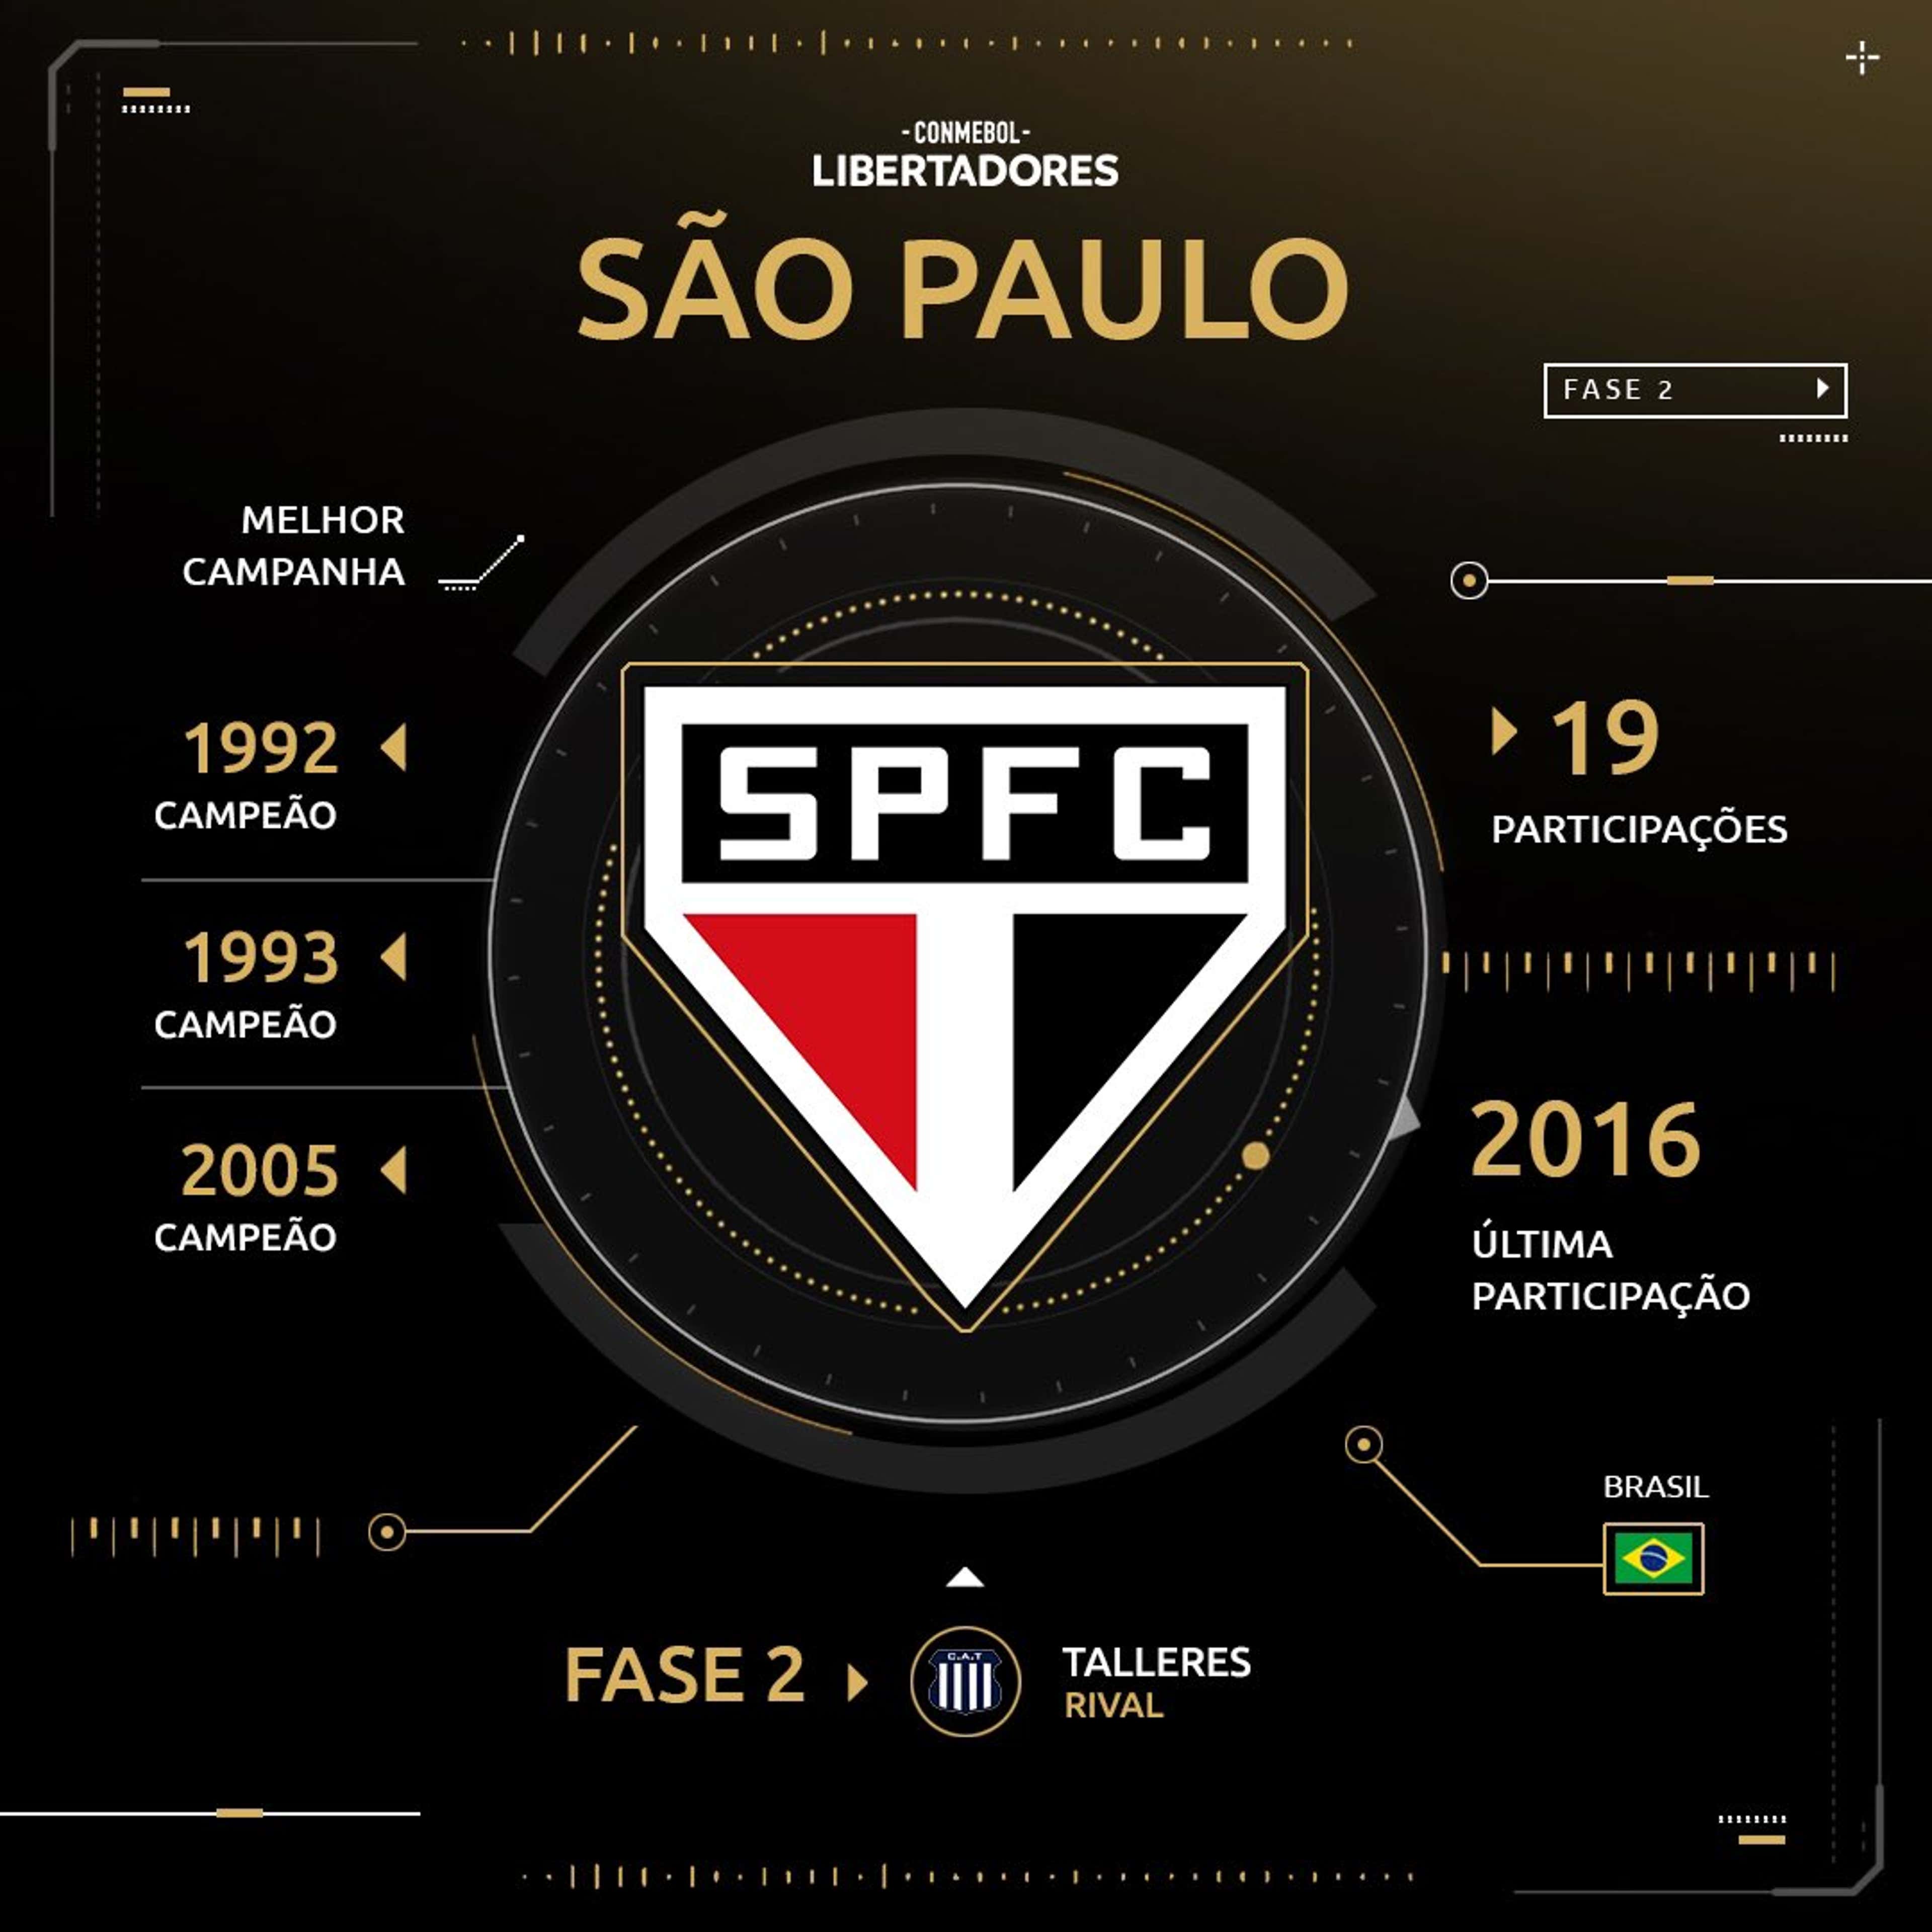 São Paulo - Histórico Libertadores - 2019